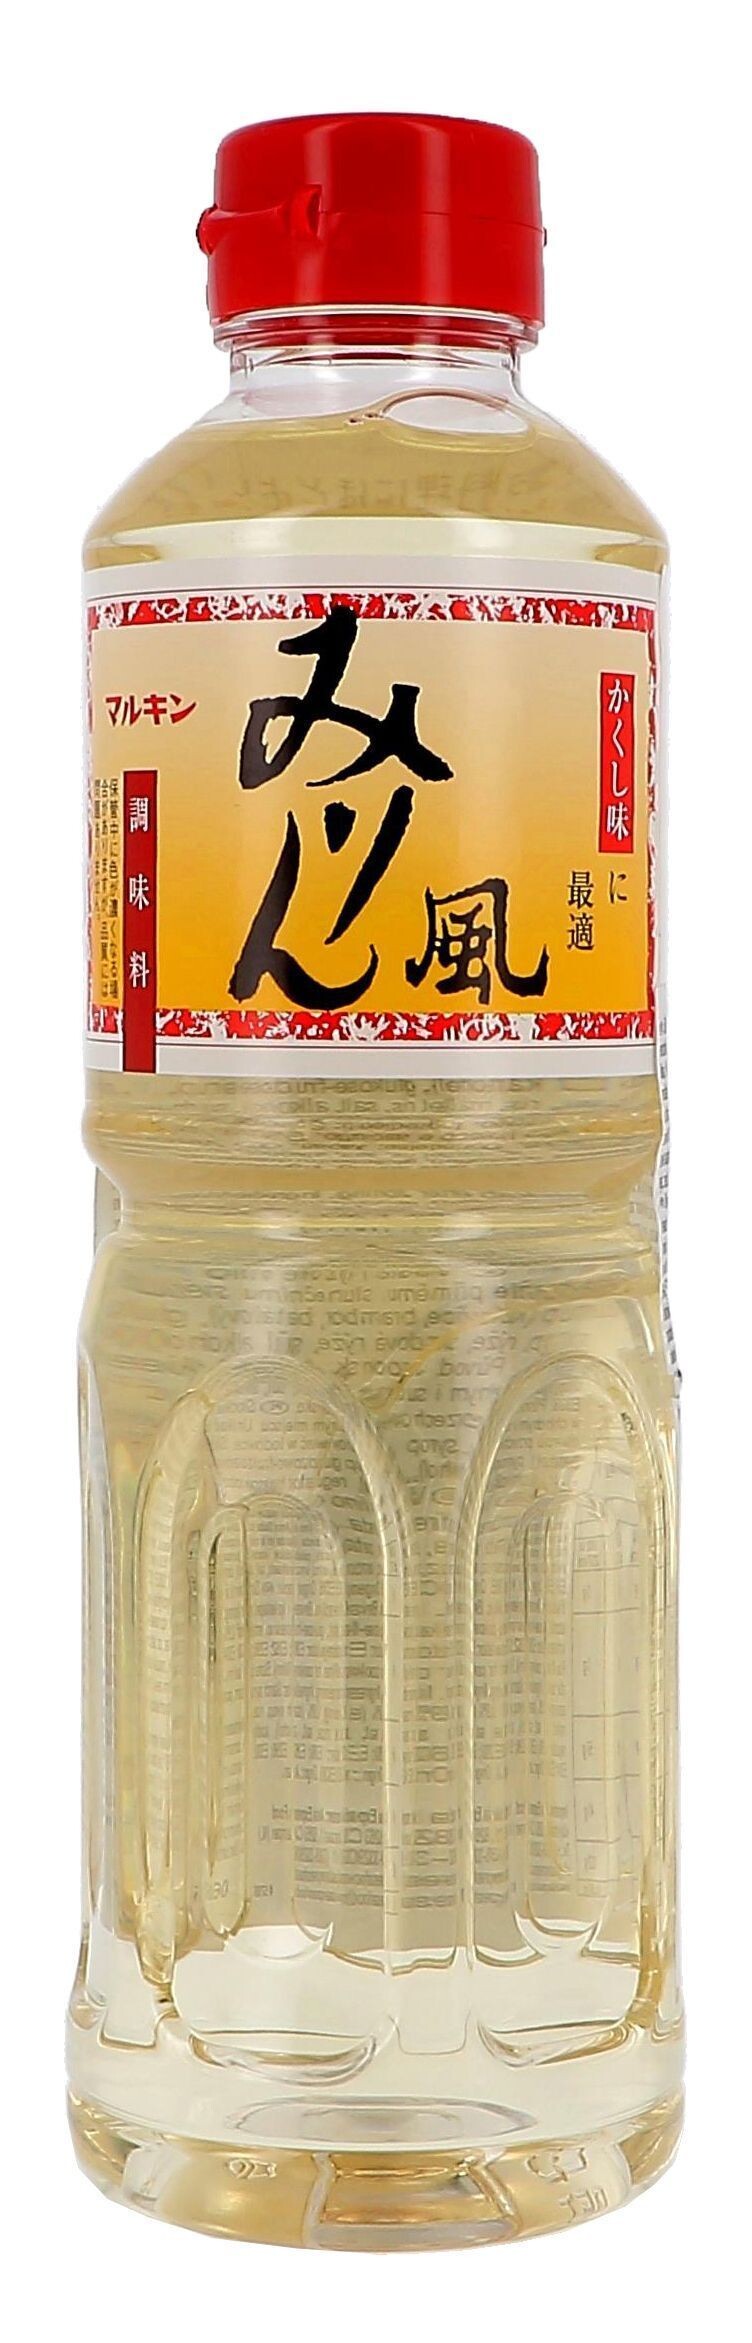 Marukin Cook Sake Mirin-Fu Japanese sweet rice wine 500ml PET